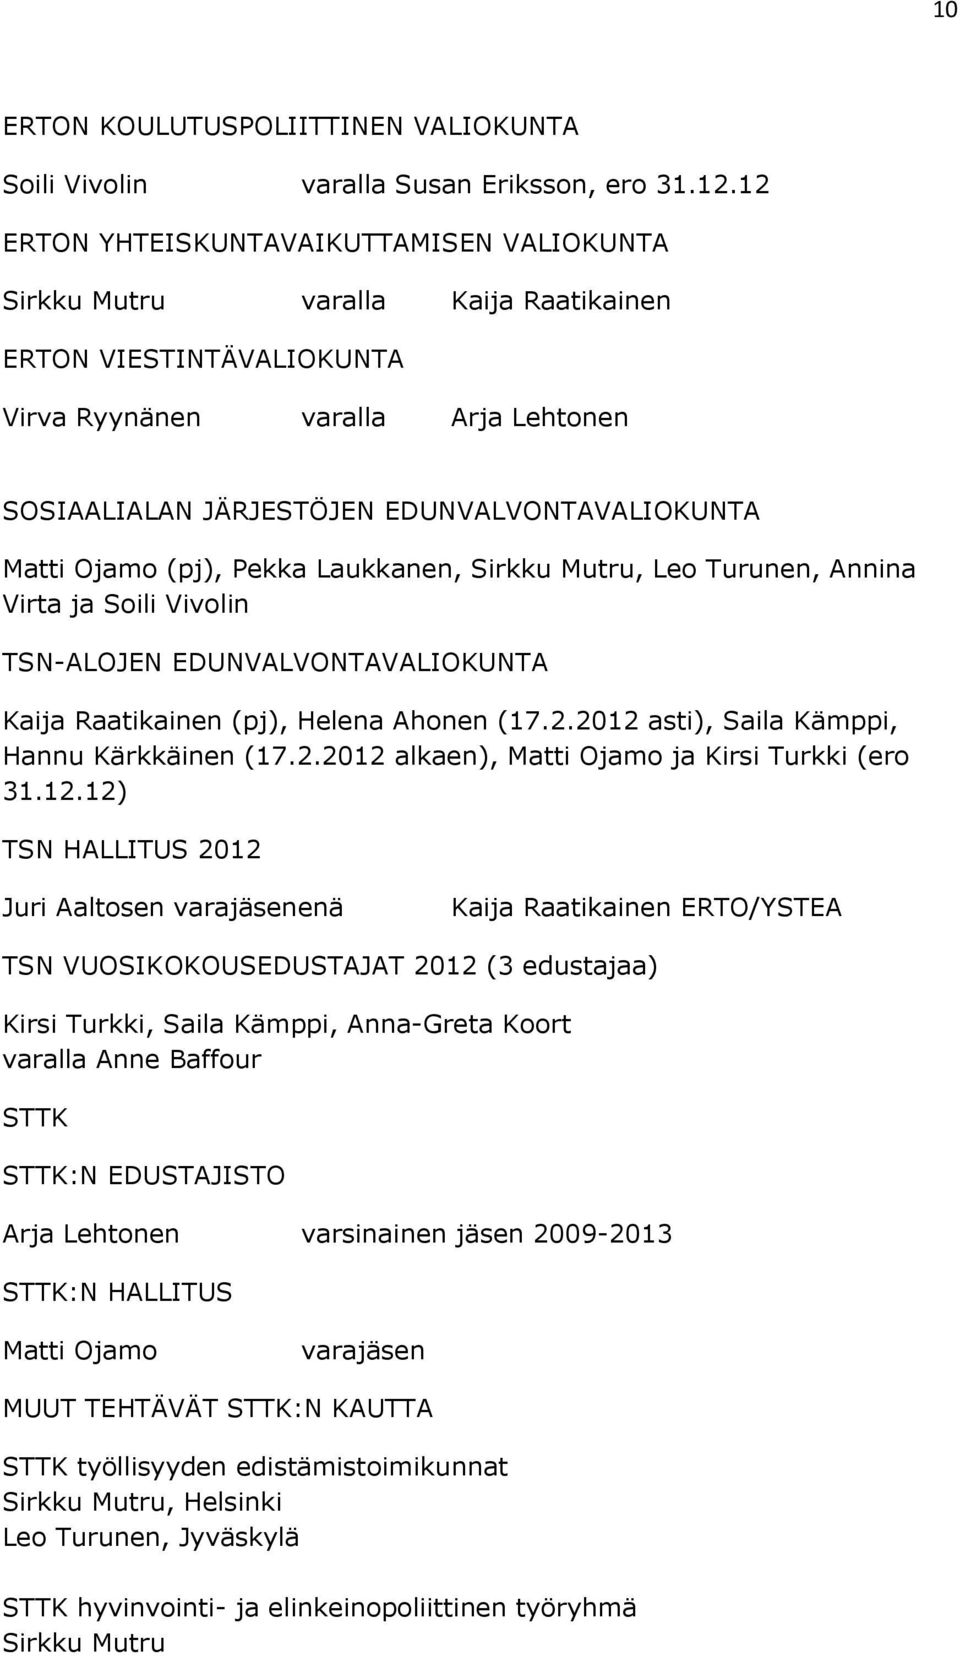 Matti Ojamo (pj), Pekka Laukkanen, Sirkku Mutru, Leo Turunen, Annina Virta ja Soili Vivolin TSN-ALOJEN EDUNVALVONTAVALIOKUNTA Kaija Raatikainen (pj), Helena Ahonen (17.2.